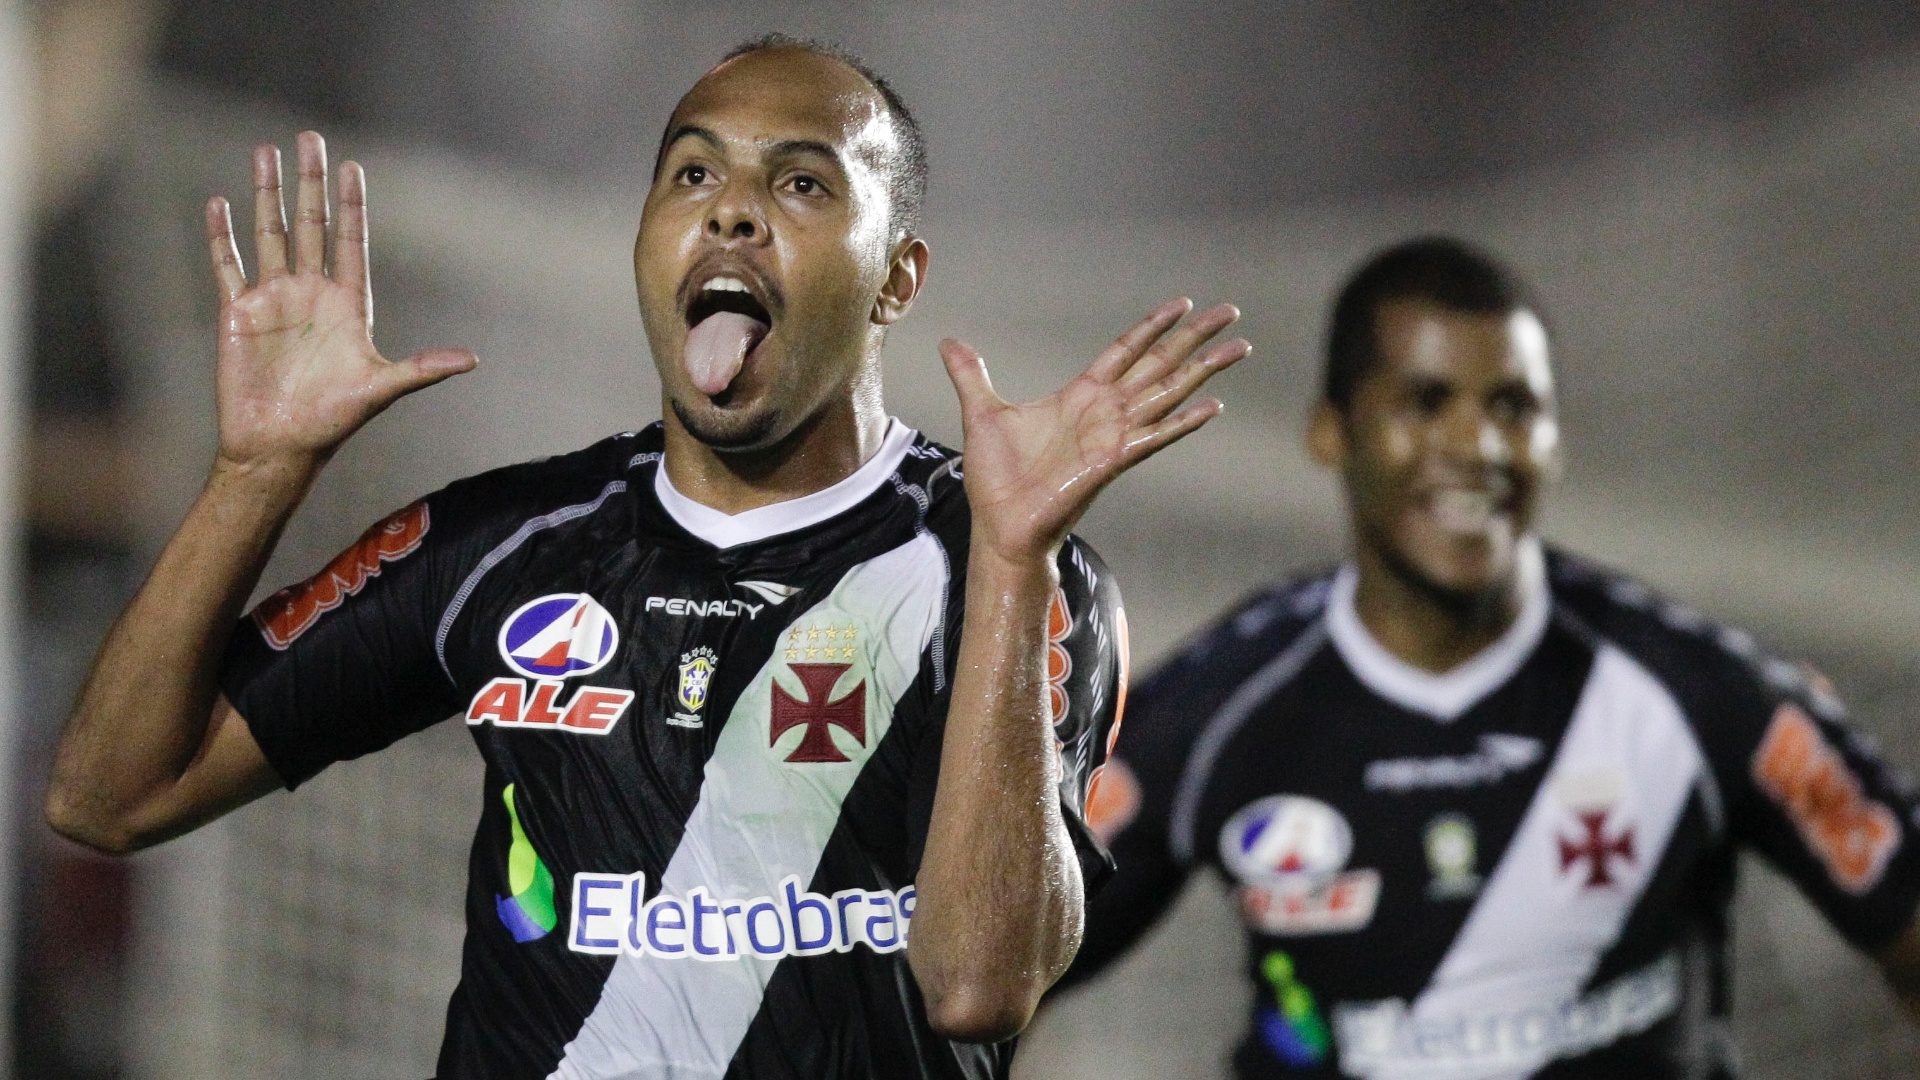 Alecsandro - Vasco - Contratado como esperança de gols, Alecsandro chegou com o sonho de marcar 20% dos gols de Roberto Dinamite.  Completou 96 jogos, fez 38 gols e foi campeão da Copa do Brasil no ano em que chegou.